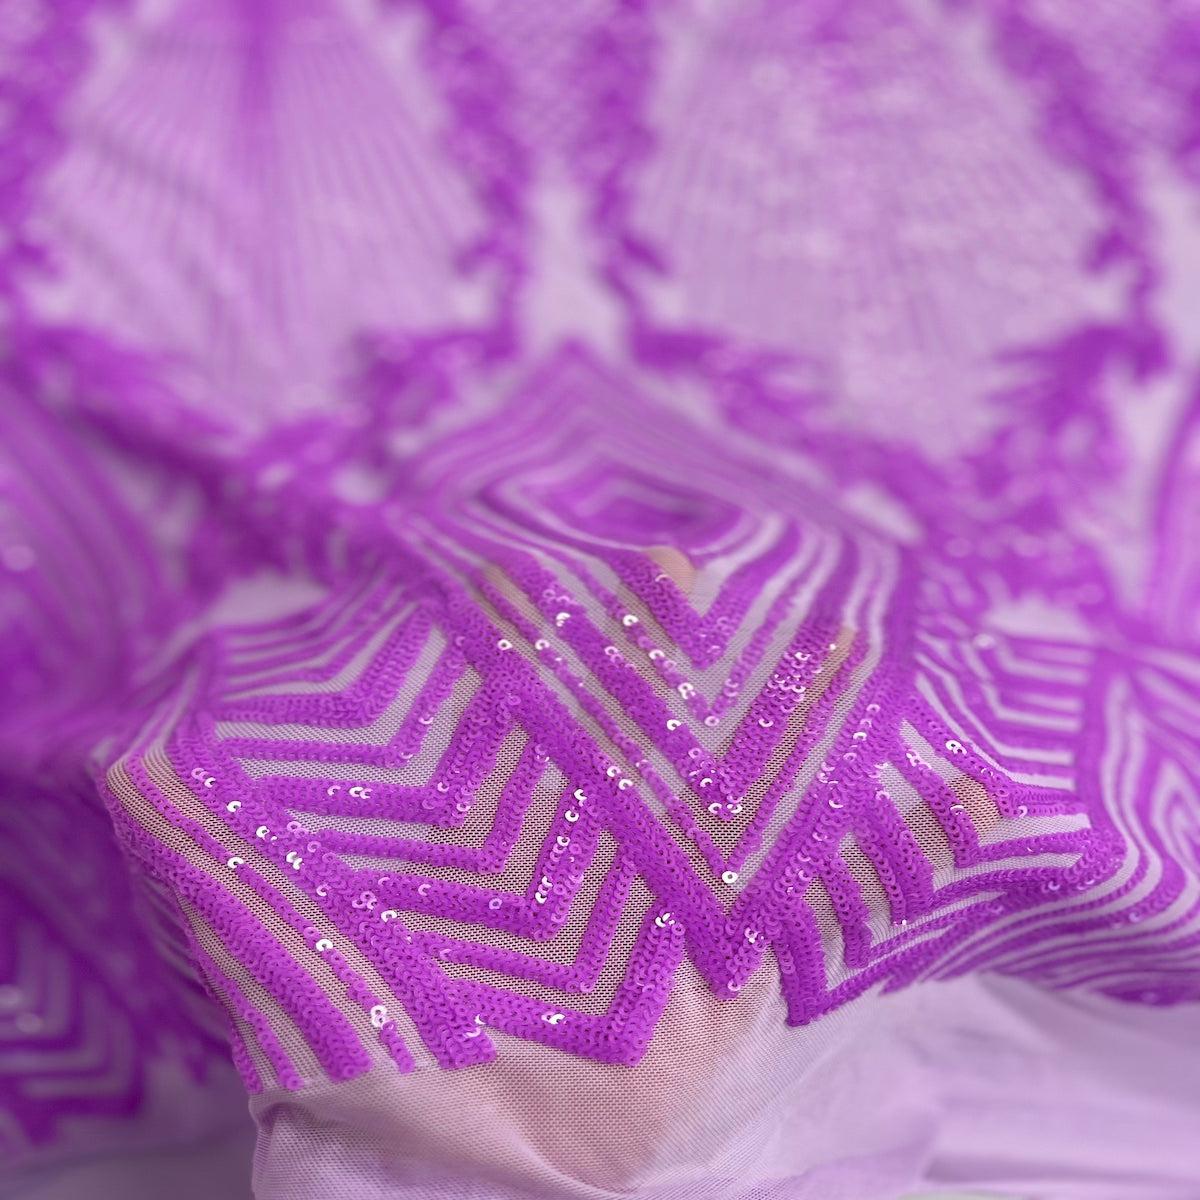 Tela de encaje de lentejuelas Alpica púrpura lavanda 